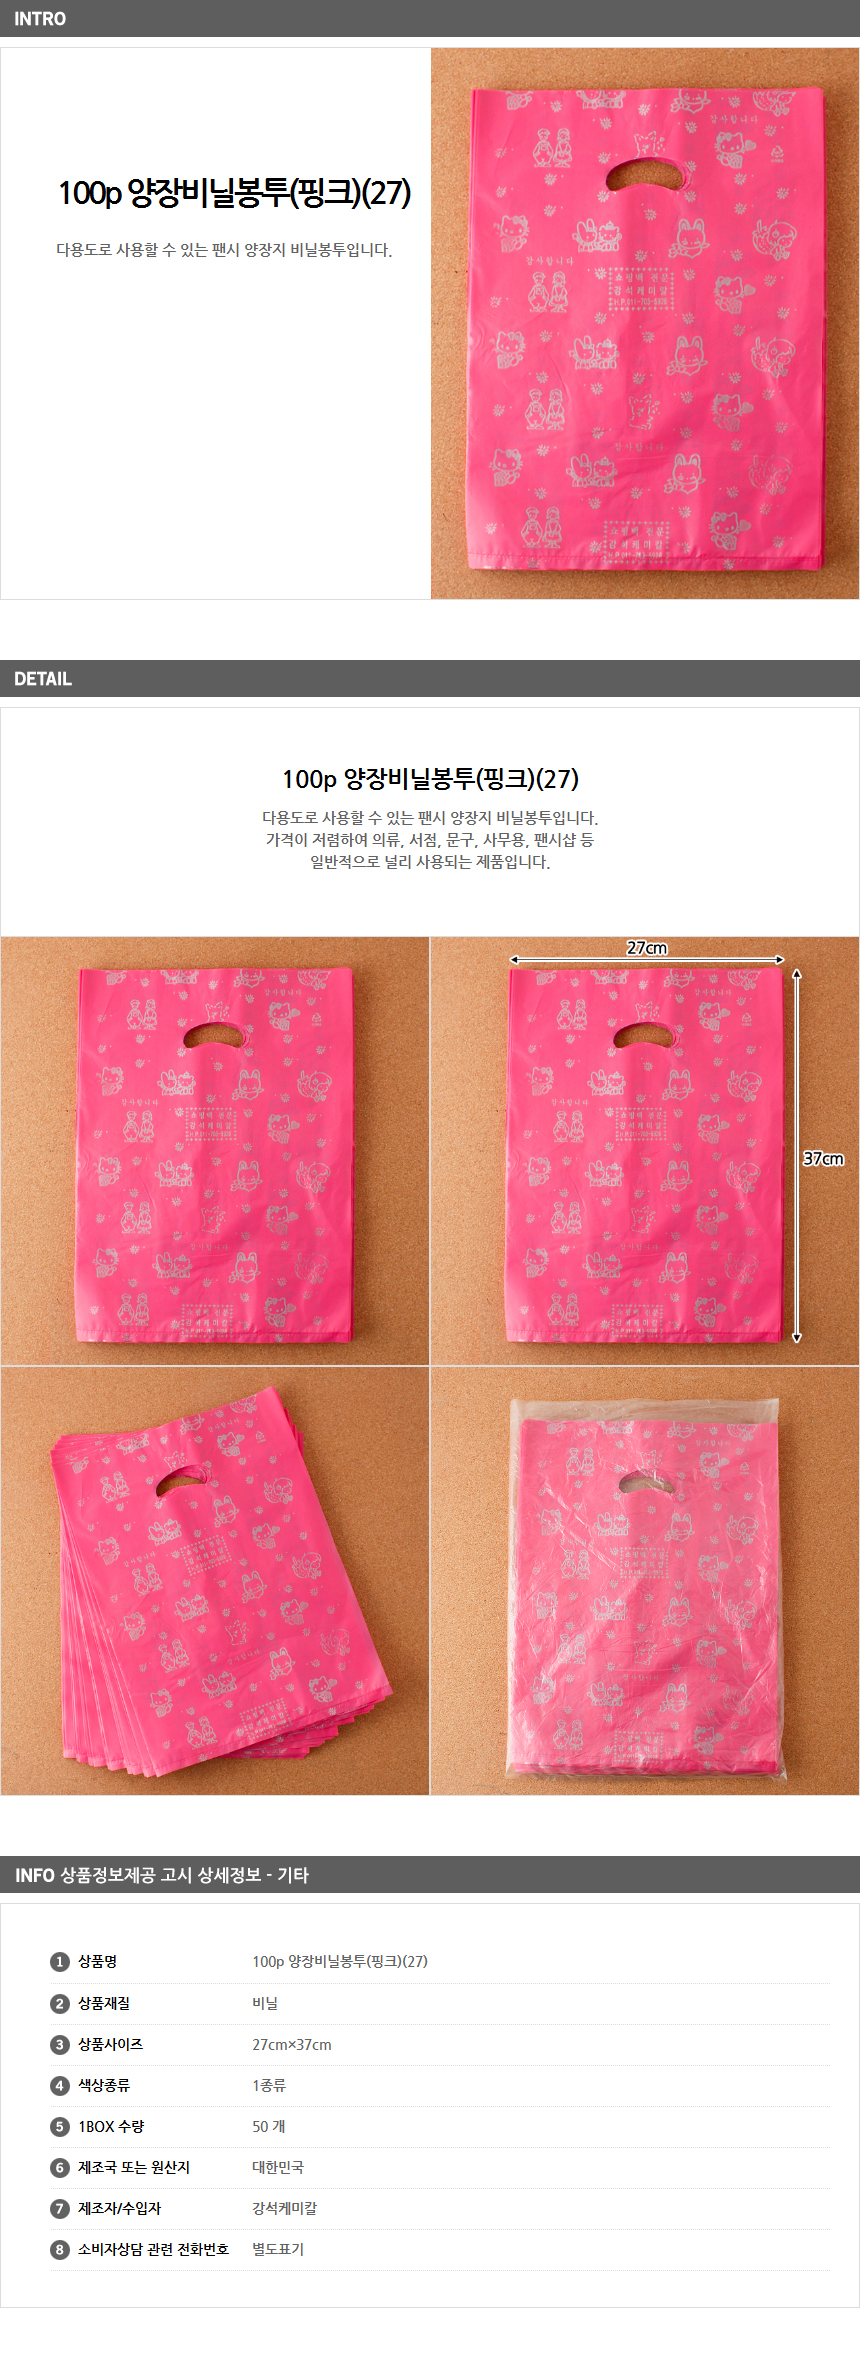 100p 팬시비닐봉투 27/ 의류매장 쇼핑백 쇼핑비닐봉투